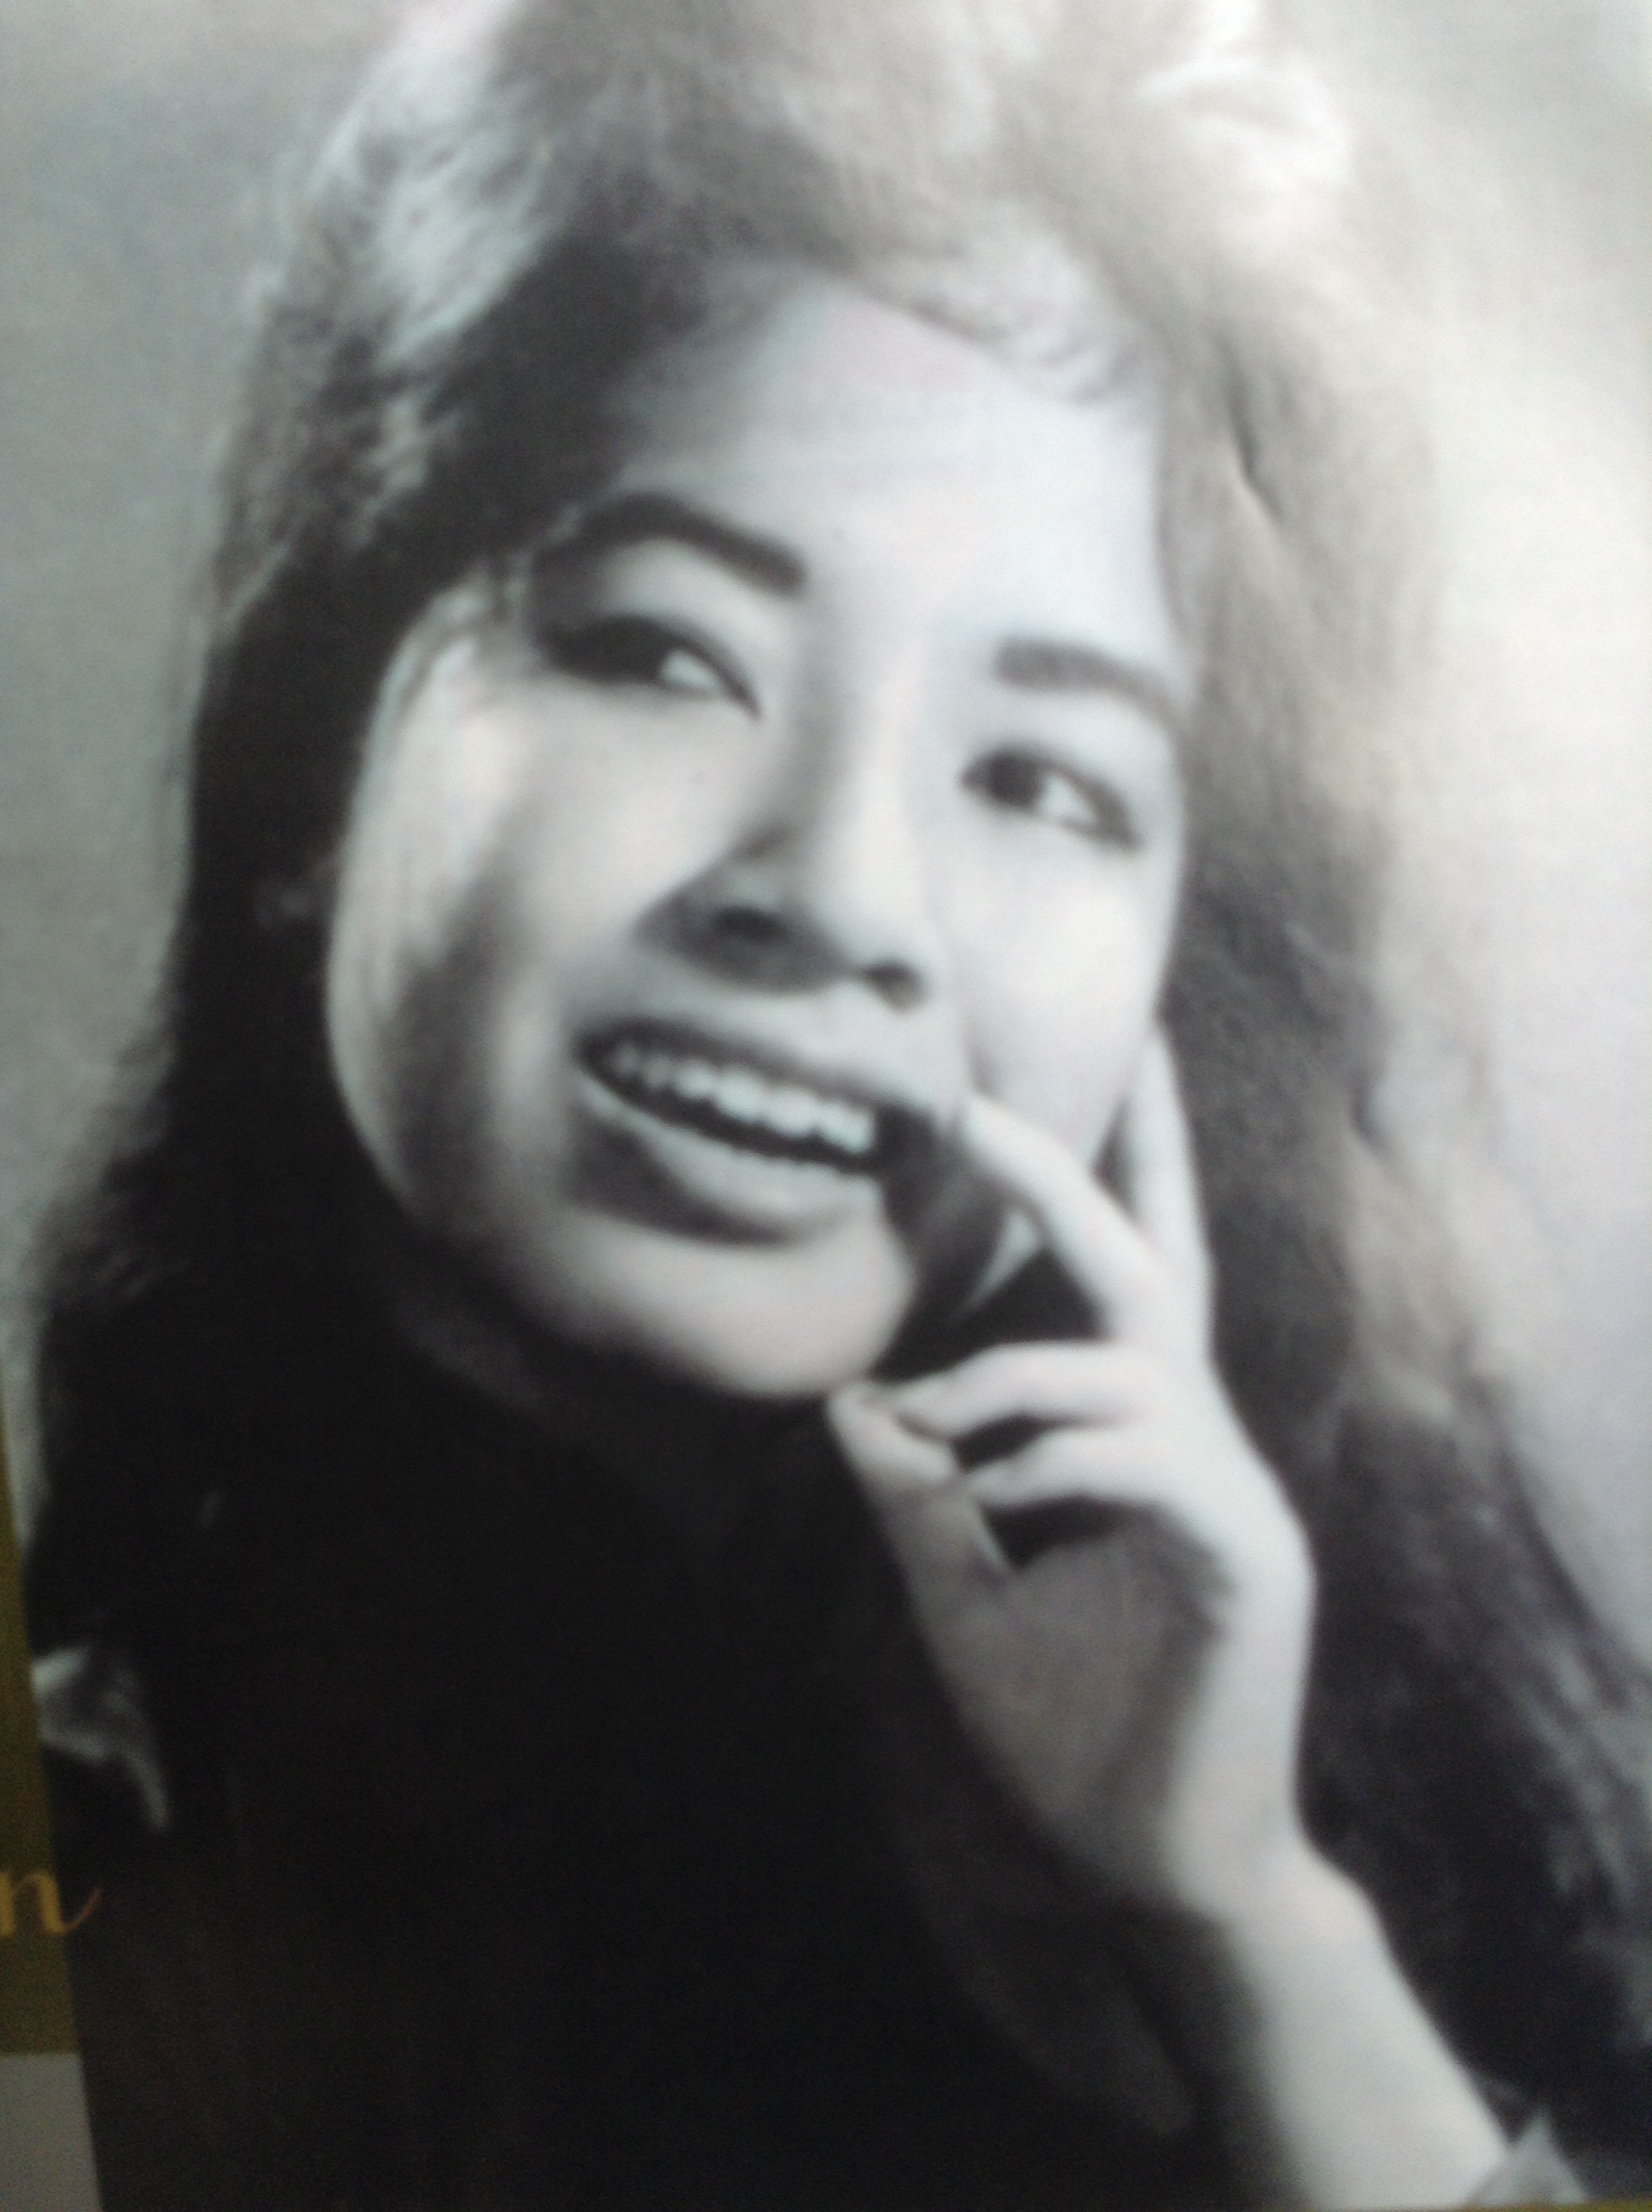 Vẻ đẹp phụ nữ Việt qua những bức ảnh đen trắng